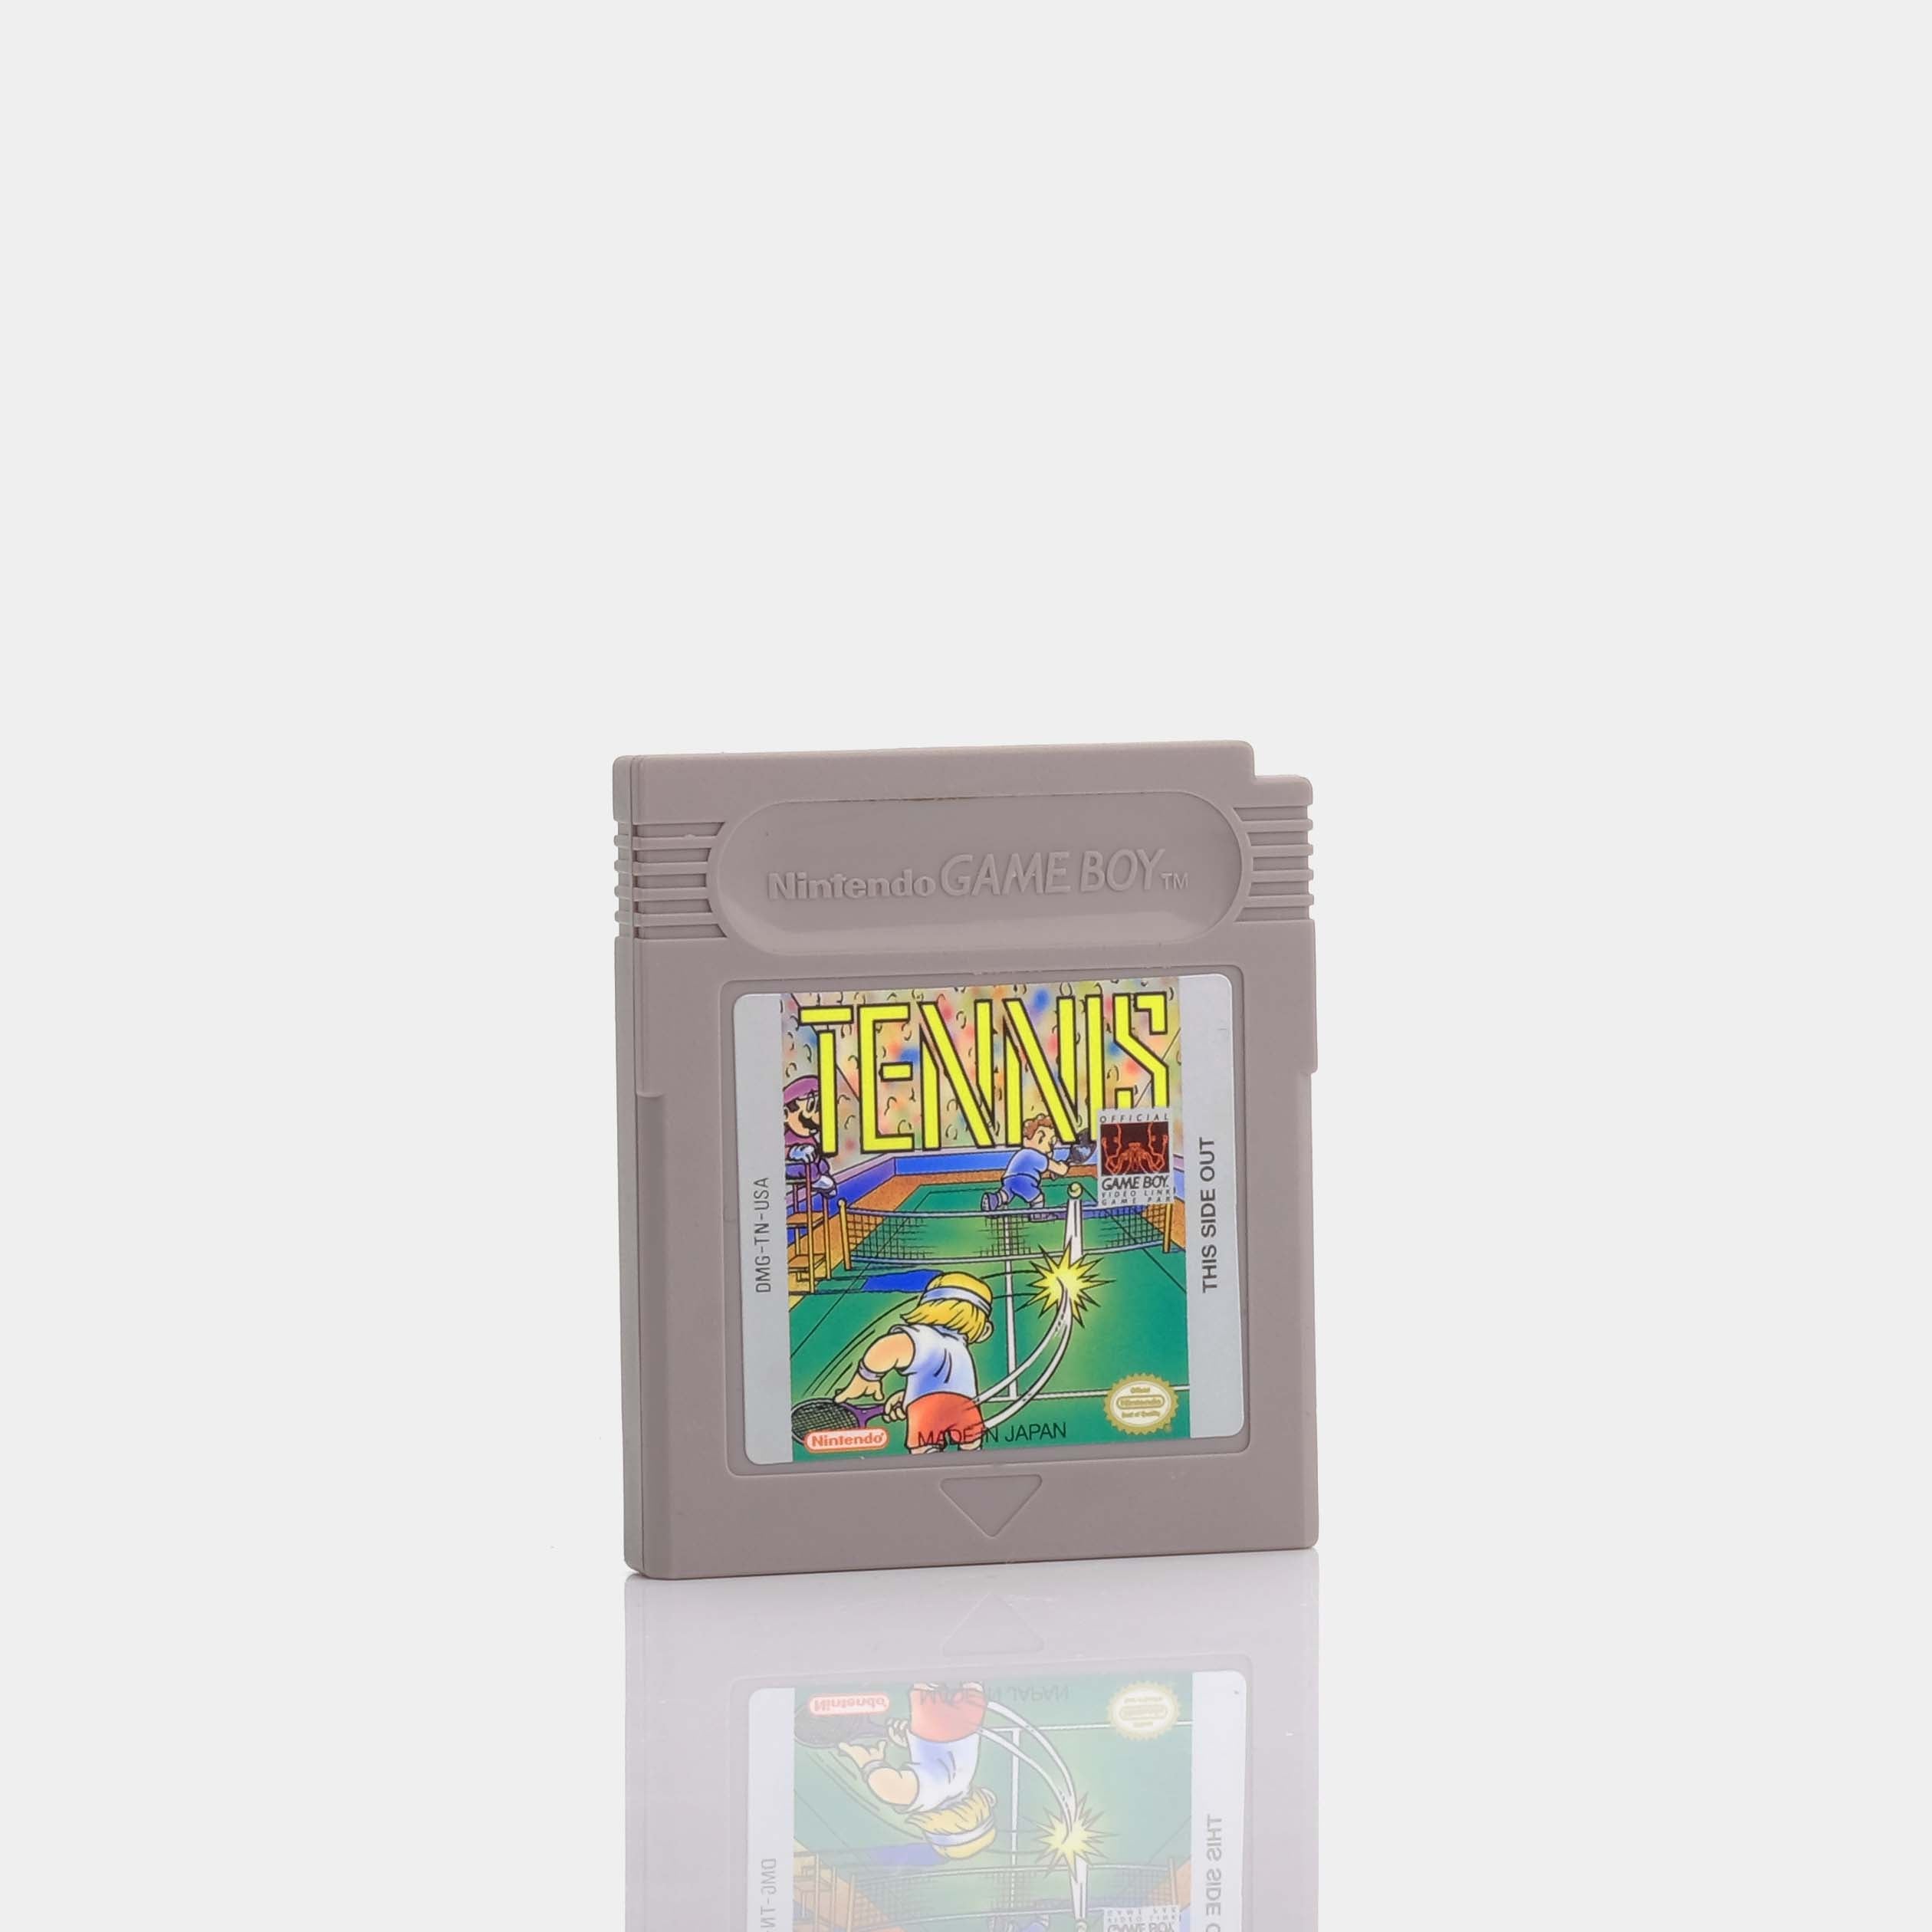 Tennis (1989) Game Boy Game